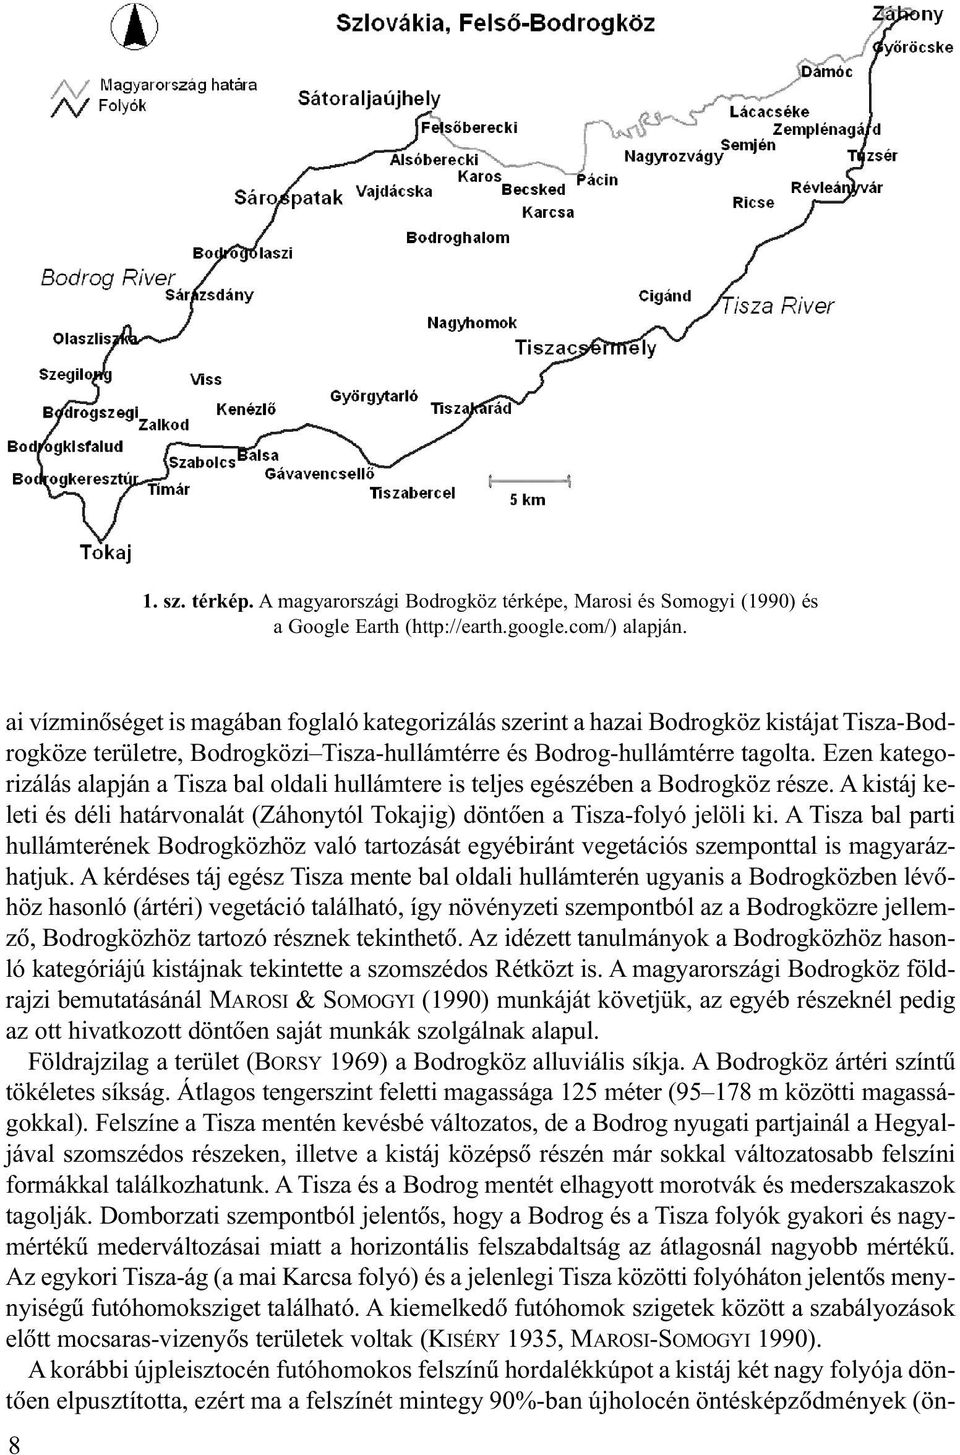 Ezen kategorizálás alapján a Tisza bal oldali hullámtere is teljes egészében a Bodrogköz része. A kistáj keleti és déli határvonalát (Záhonytól Tokajig) döntõen a Tisza-folyó jelöli ki.